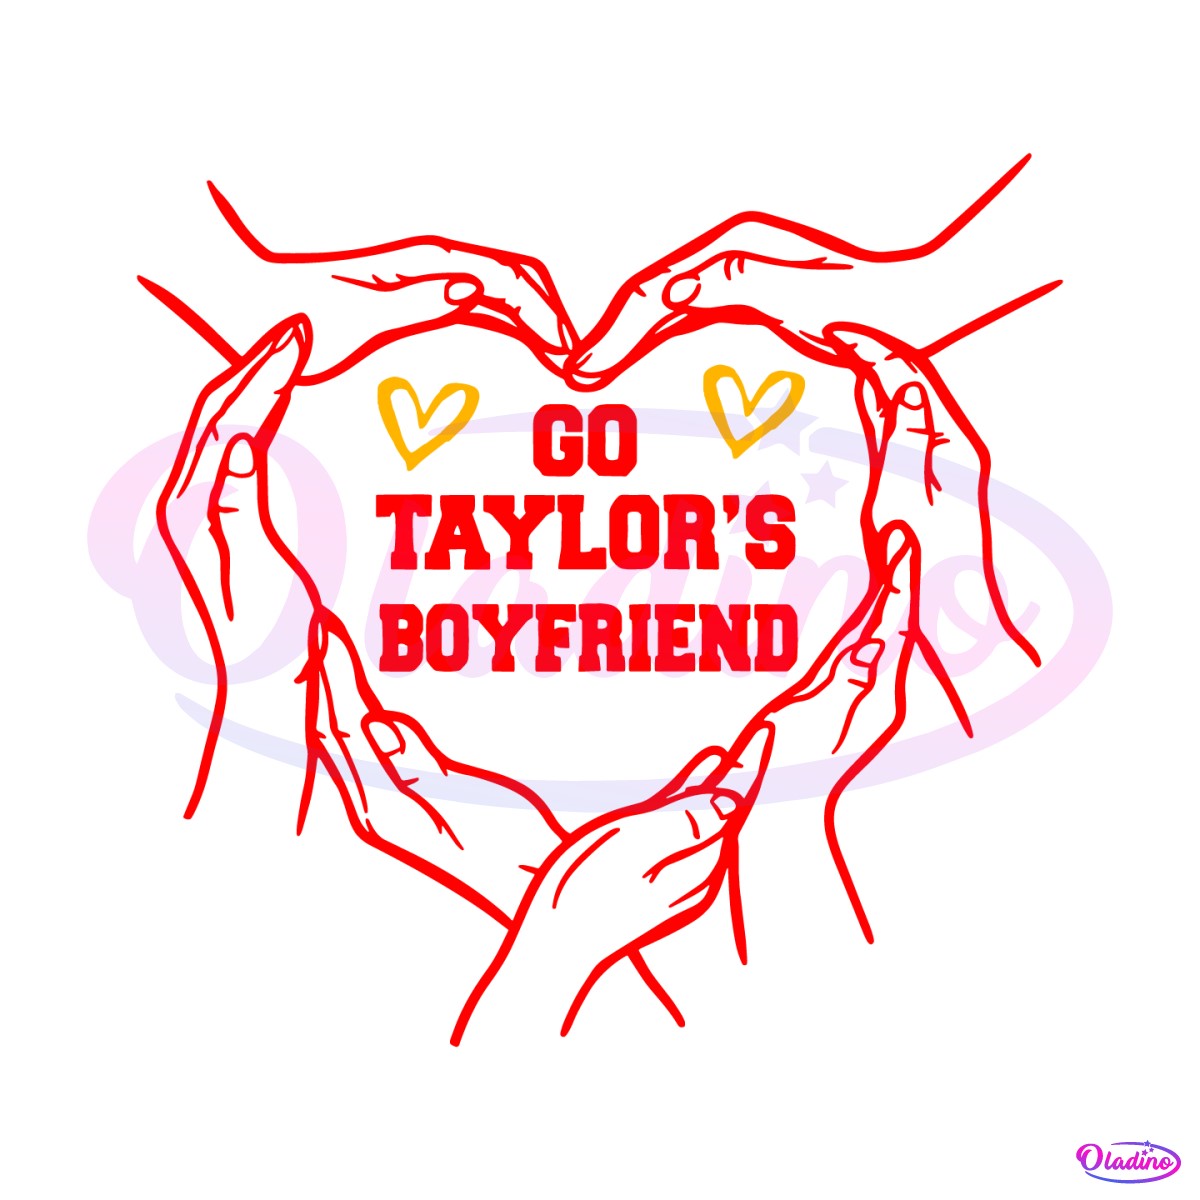 go-taylors-boyfriend-heart-hands-svg